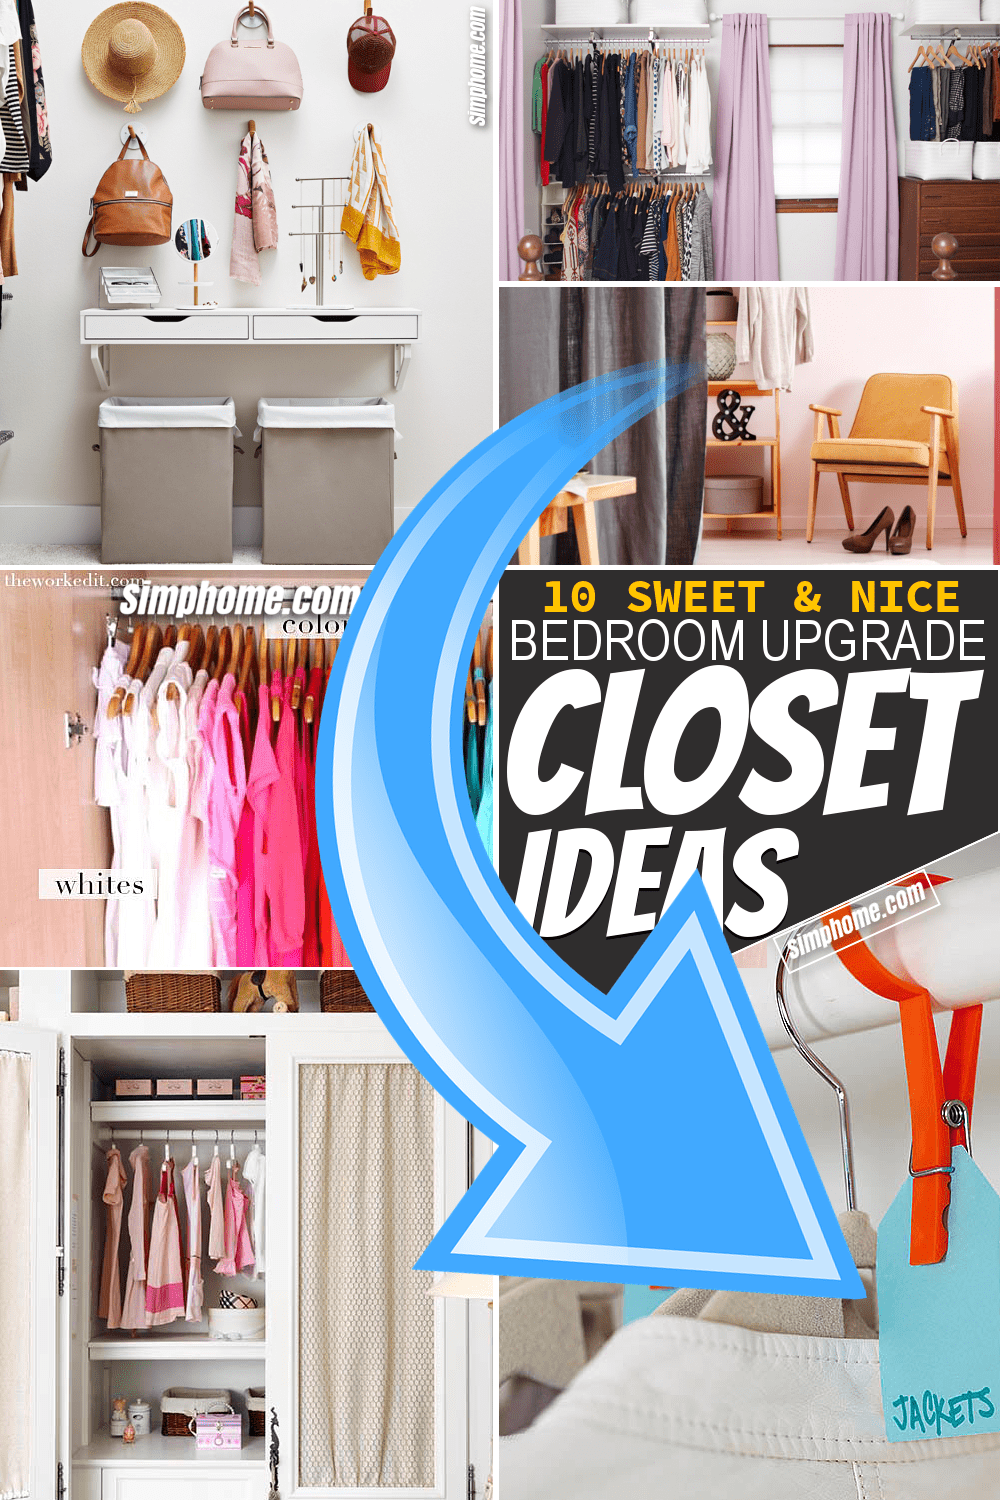 Simphome.com 10 bedroom closet ideas featured image